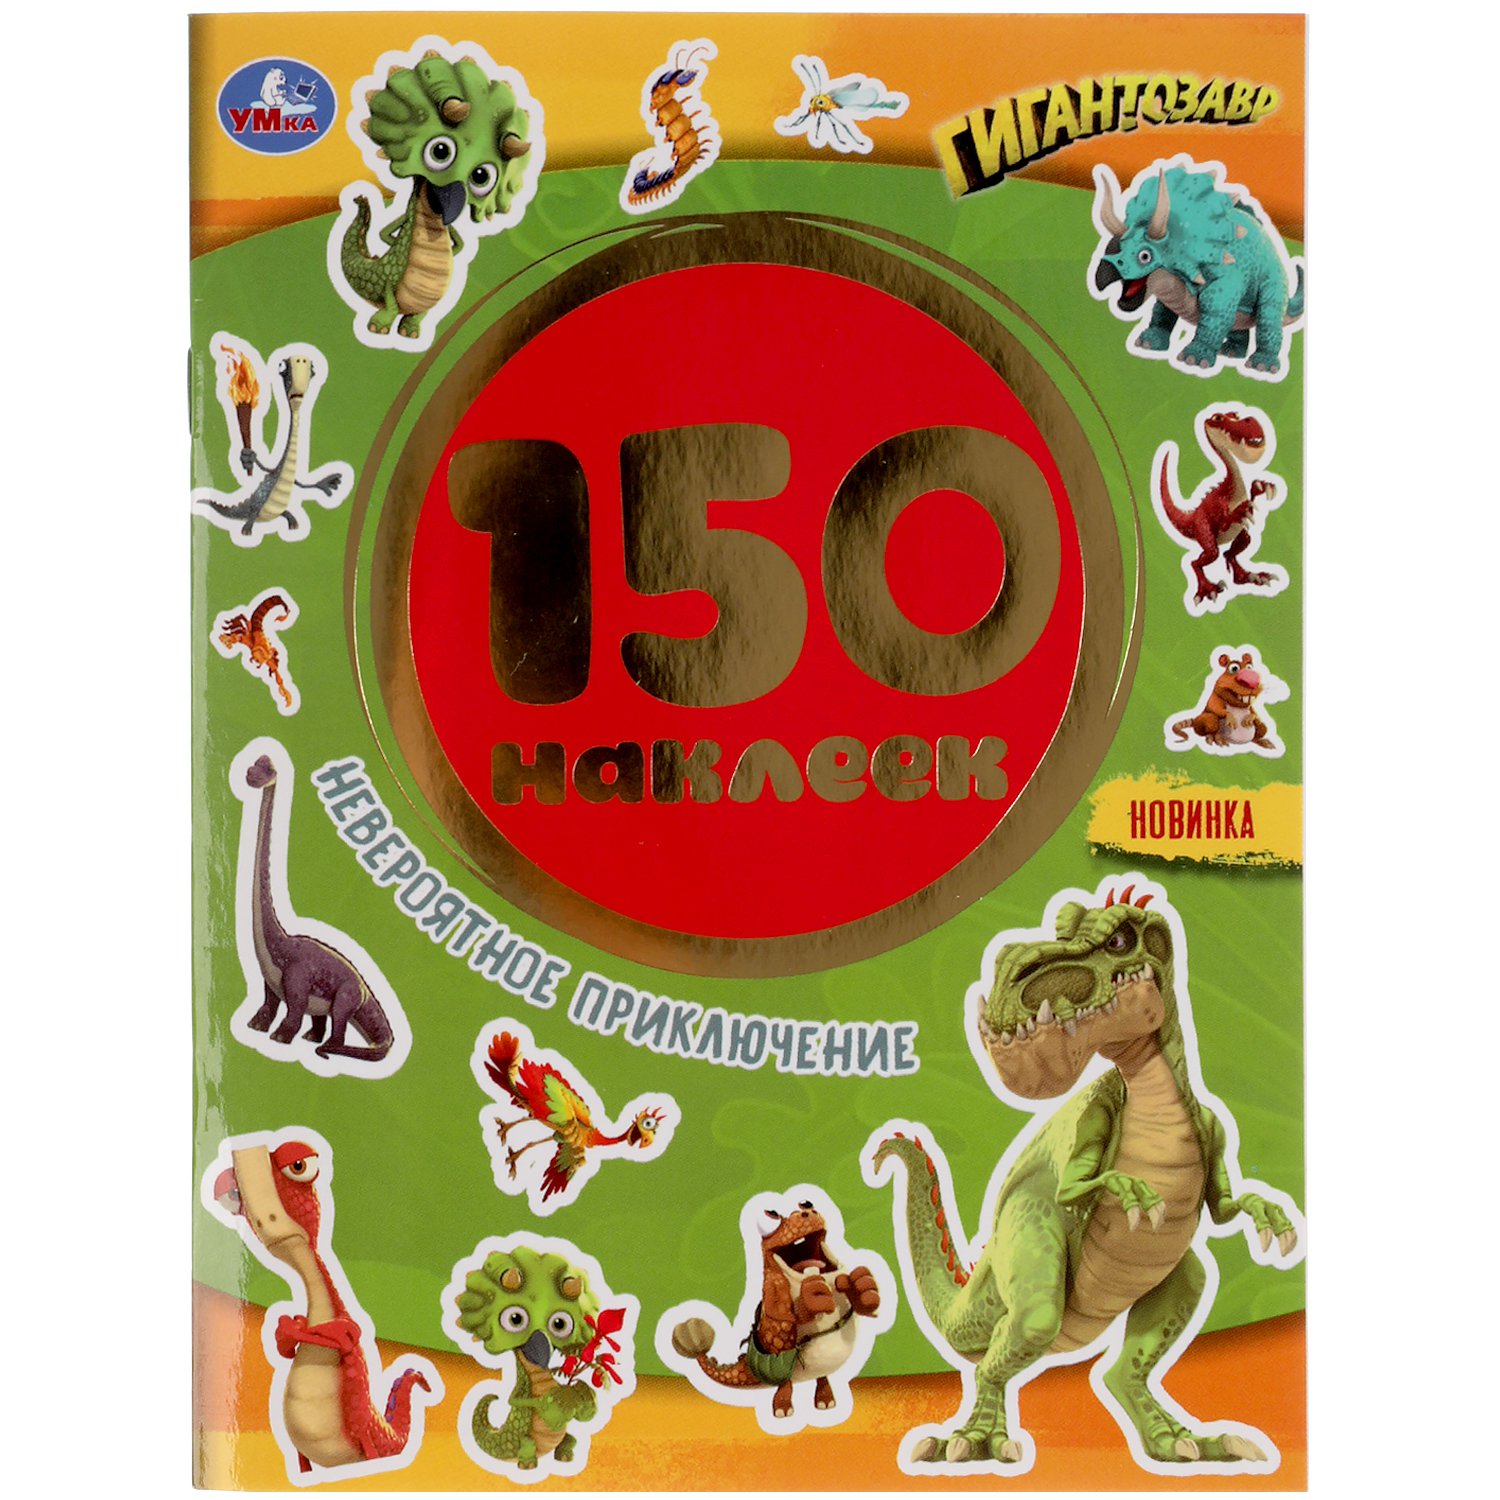 Невероятное приключение. Гигантозавры. Альбом 150 наклеек. 155х205мм, 6 стр. Умка в кор.50шт